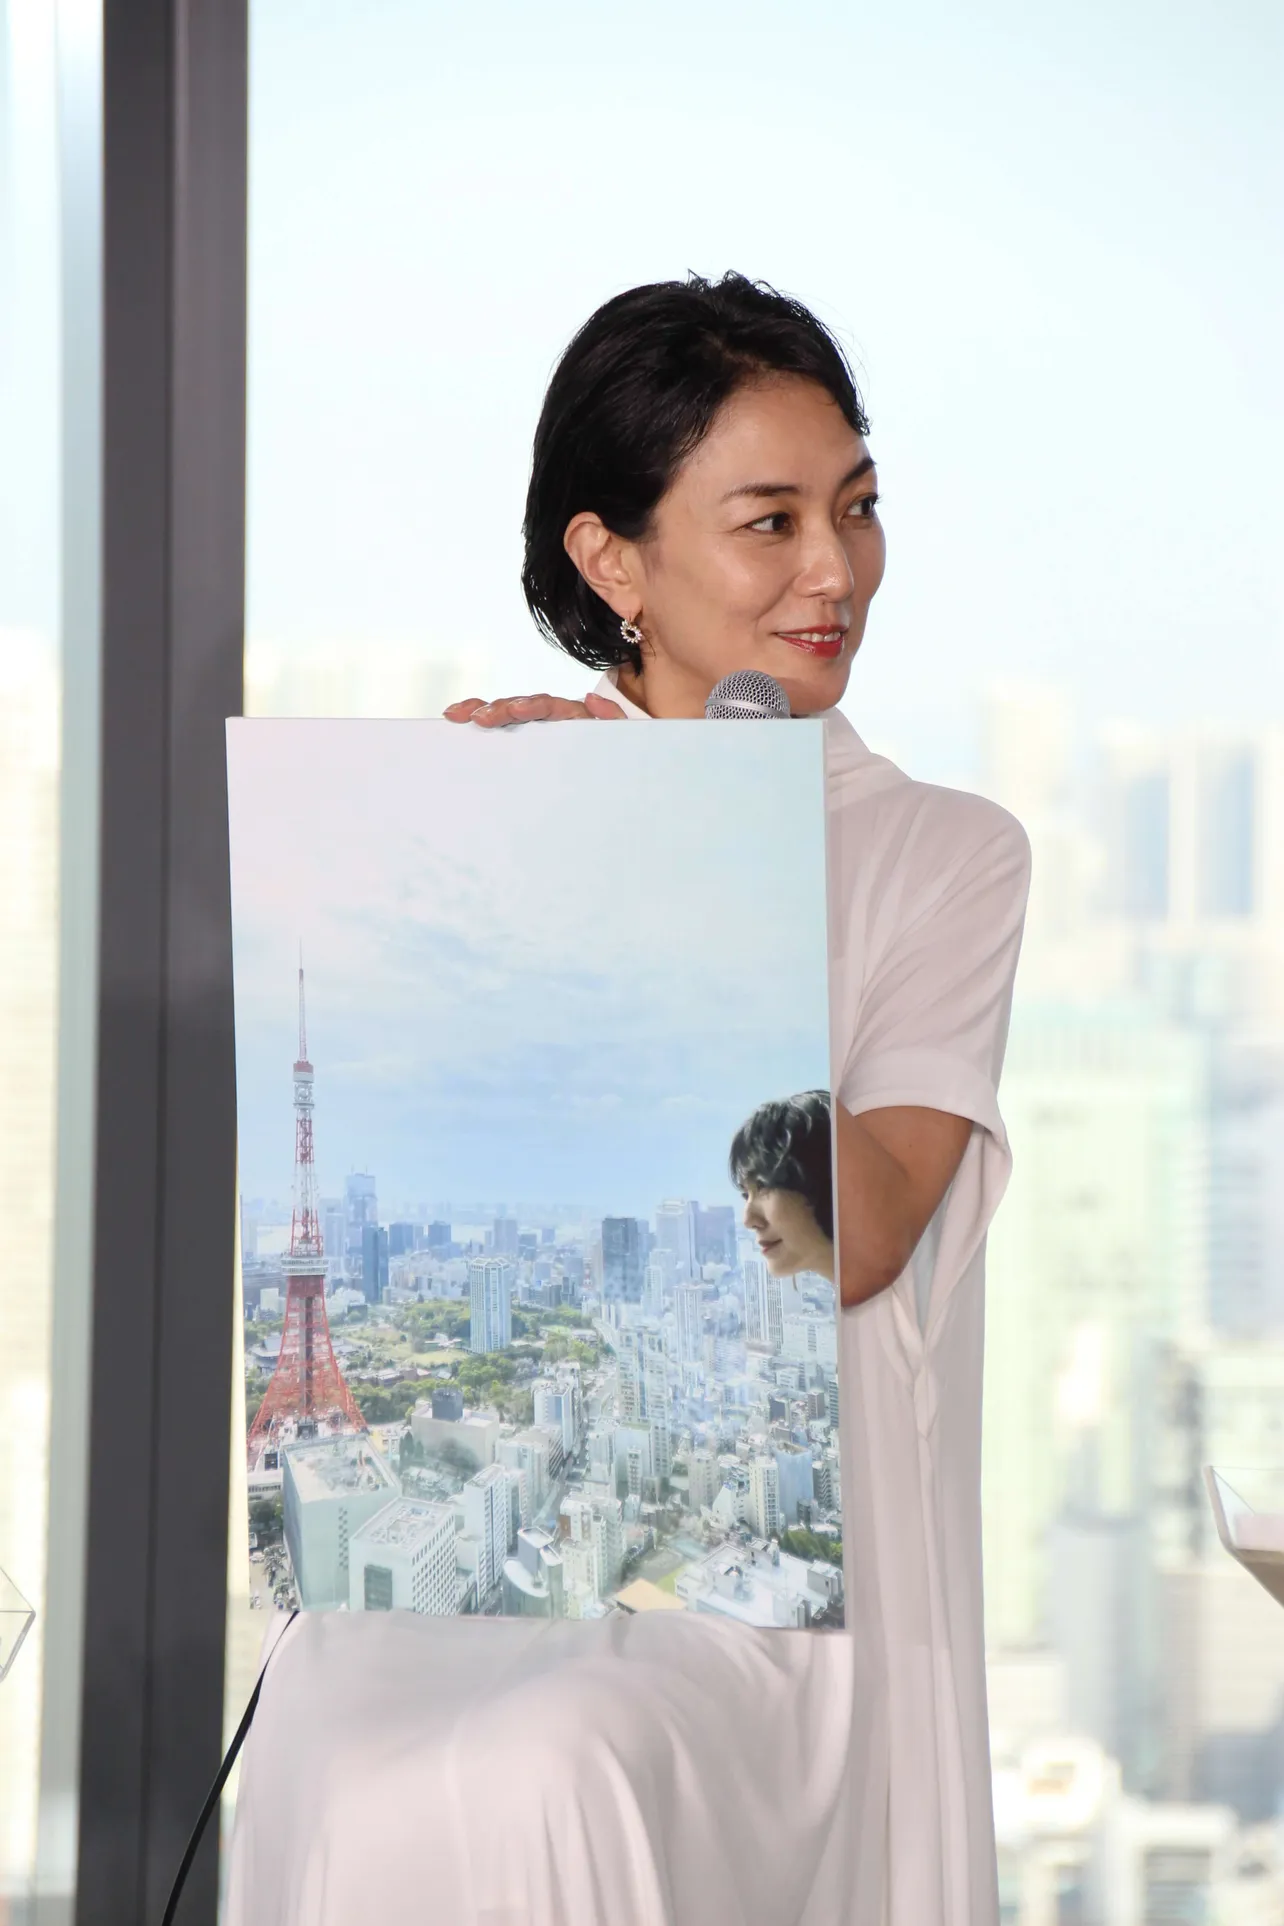 板谷由夏は、東京タワーと向かい合うアート写真のような1枚